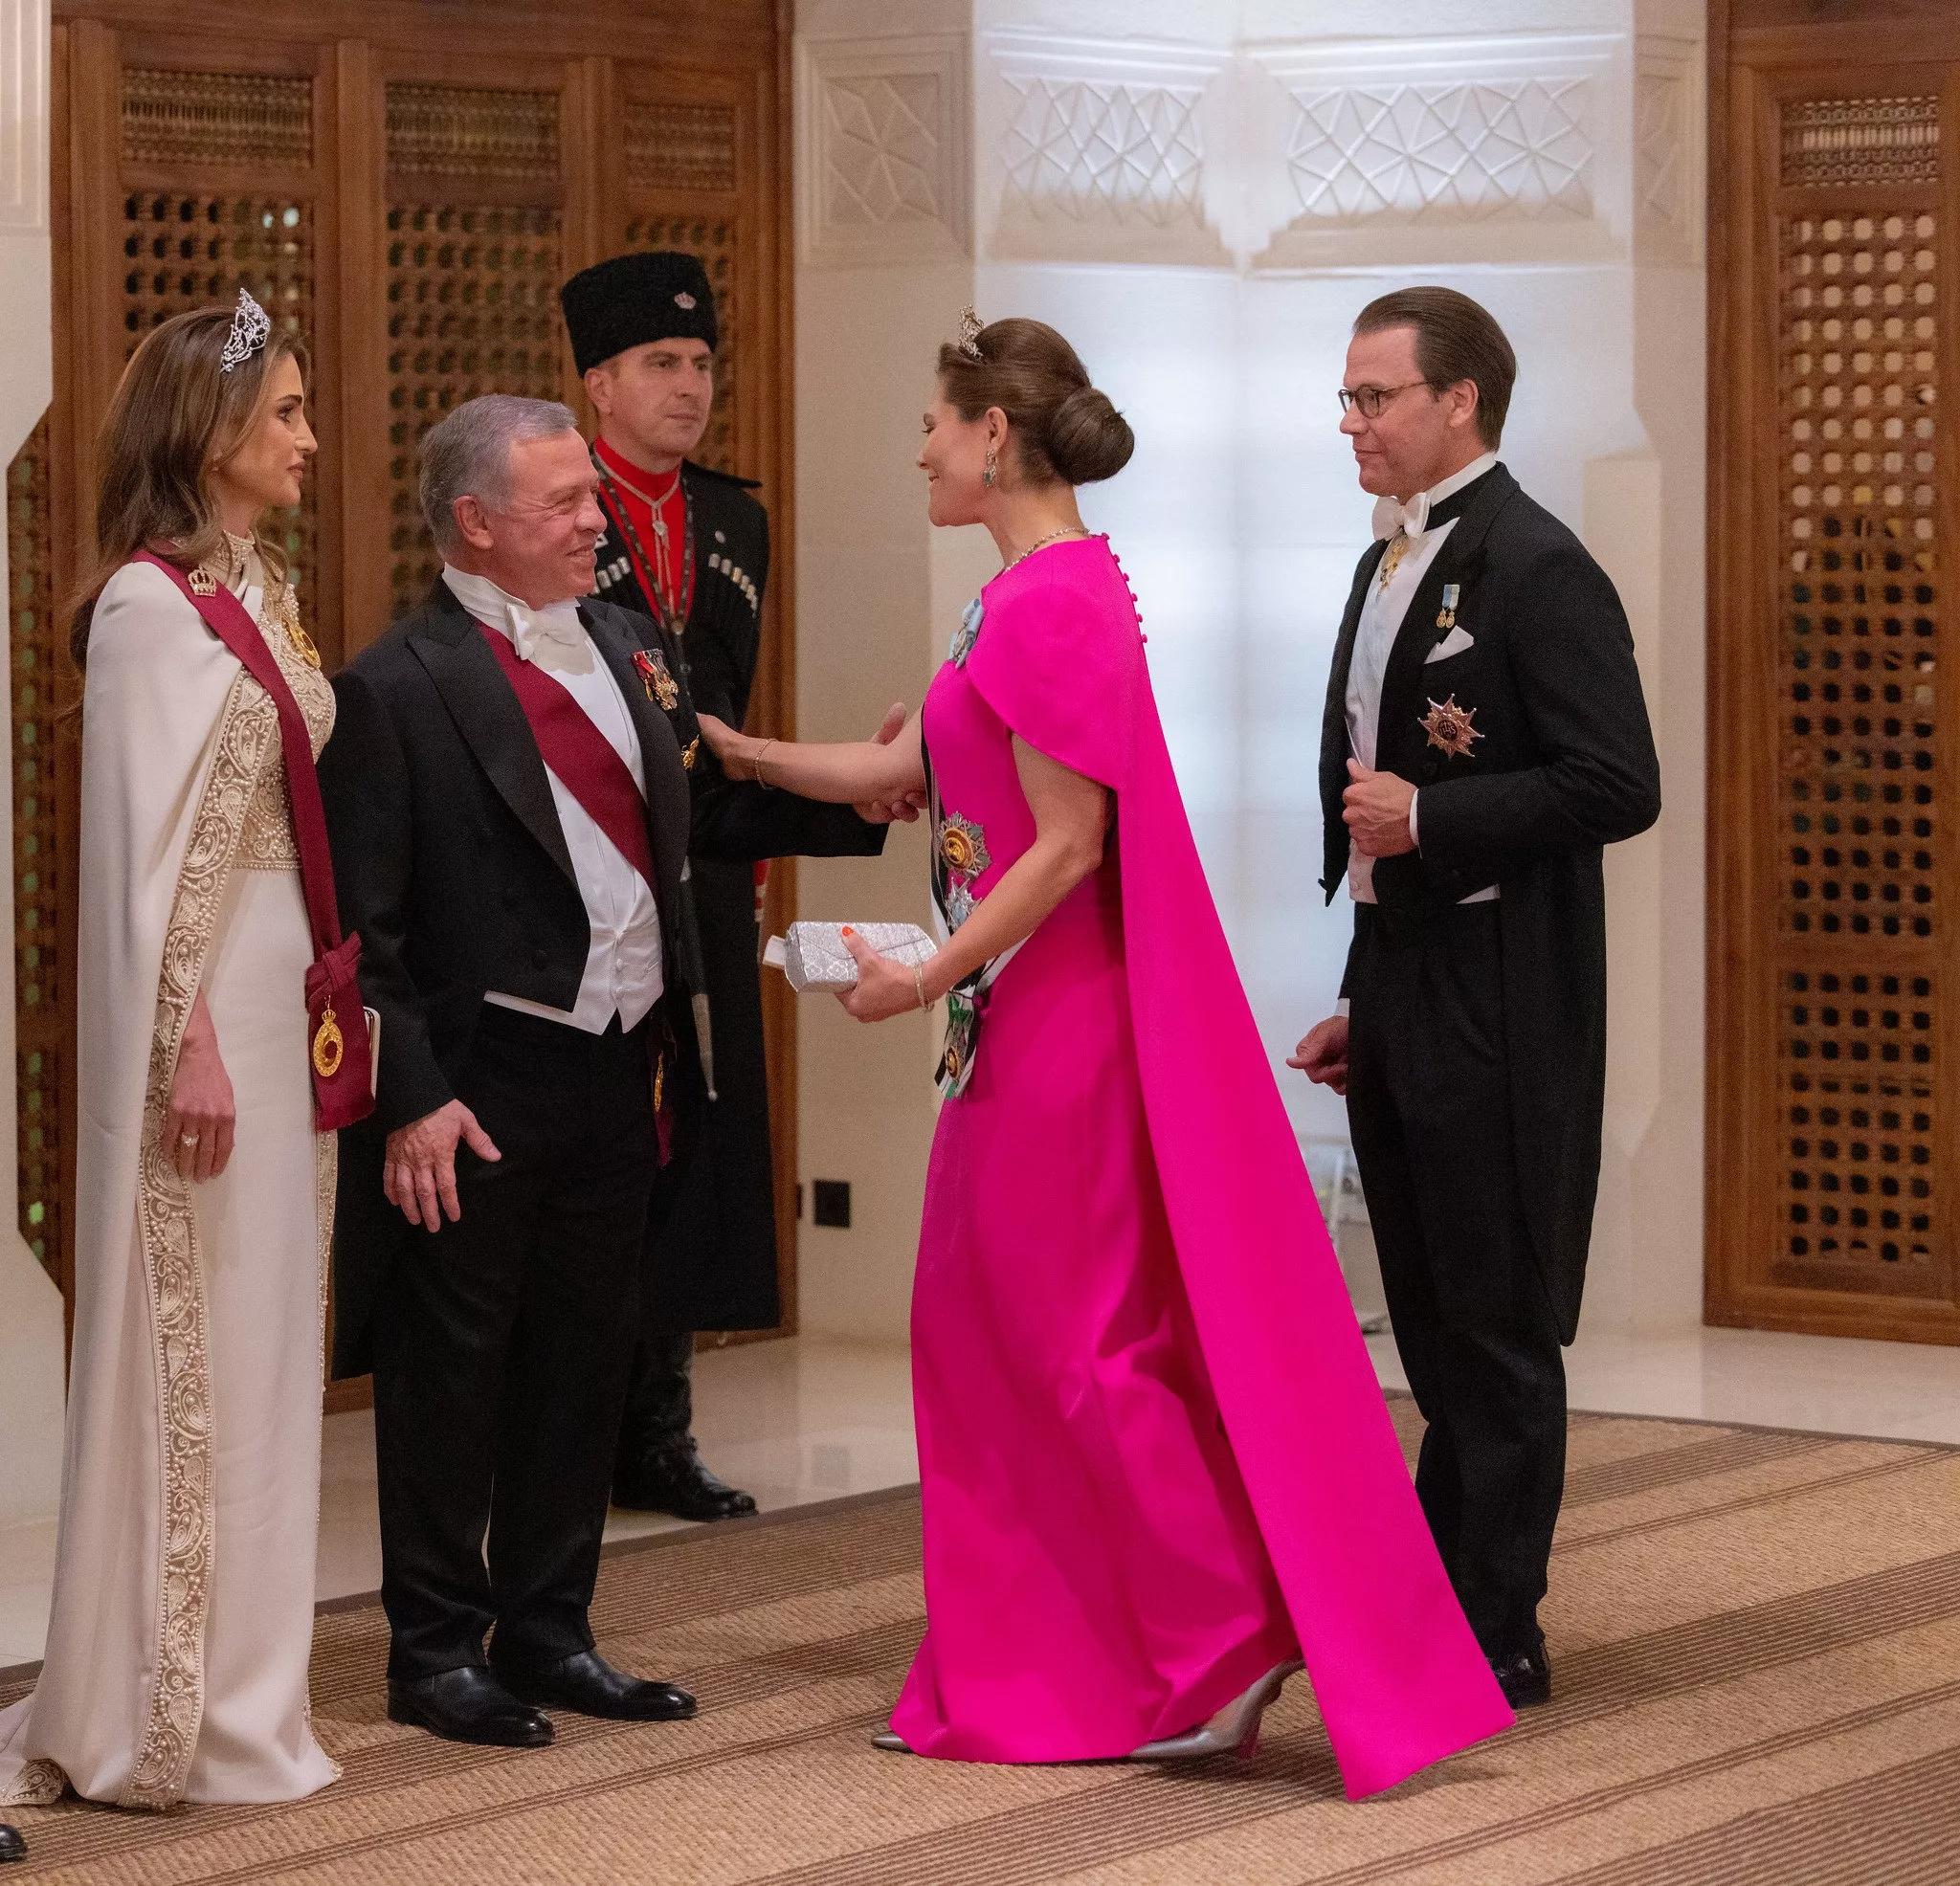 لوك الملكة رانيا الثاني في زفاف الامير حسين ورجوة ال سيف: ملوكي إلى أقصى الحدود